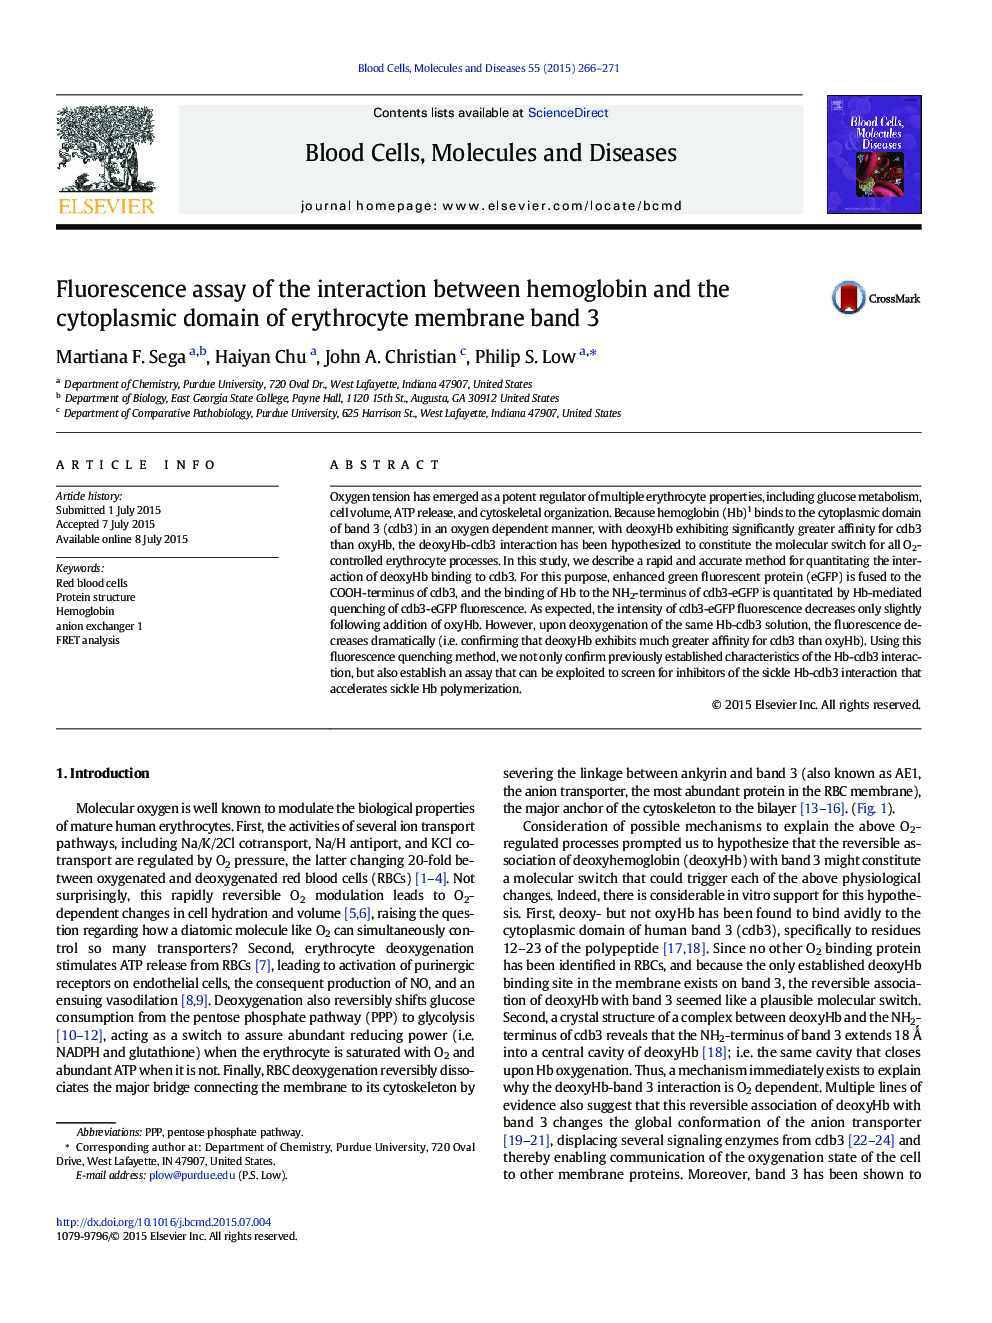 بررسی فلورسانس اثر متقابل هموگلوبین و دامنه سیتوپلاسمی باند غشای اریتروسیت 3 